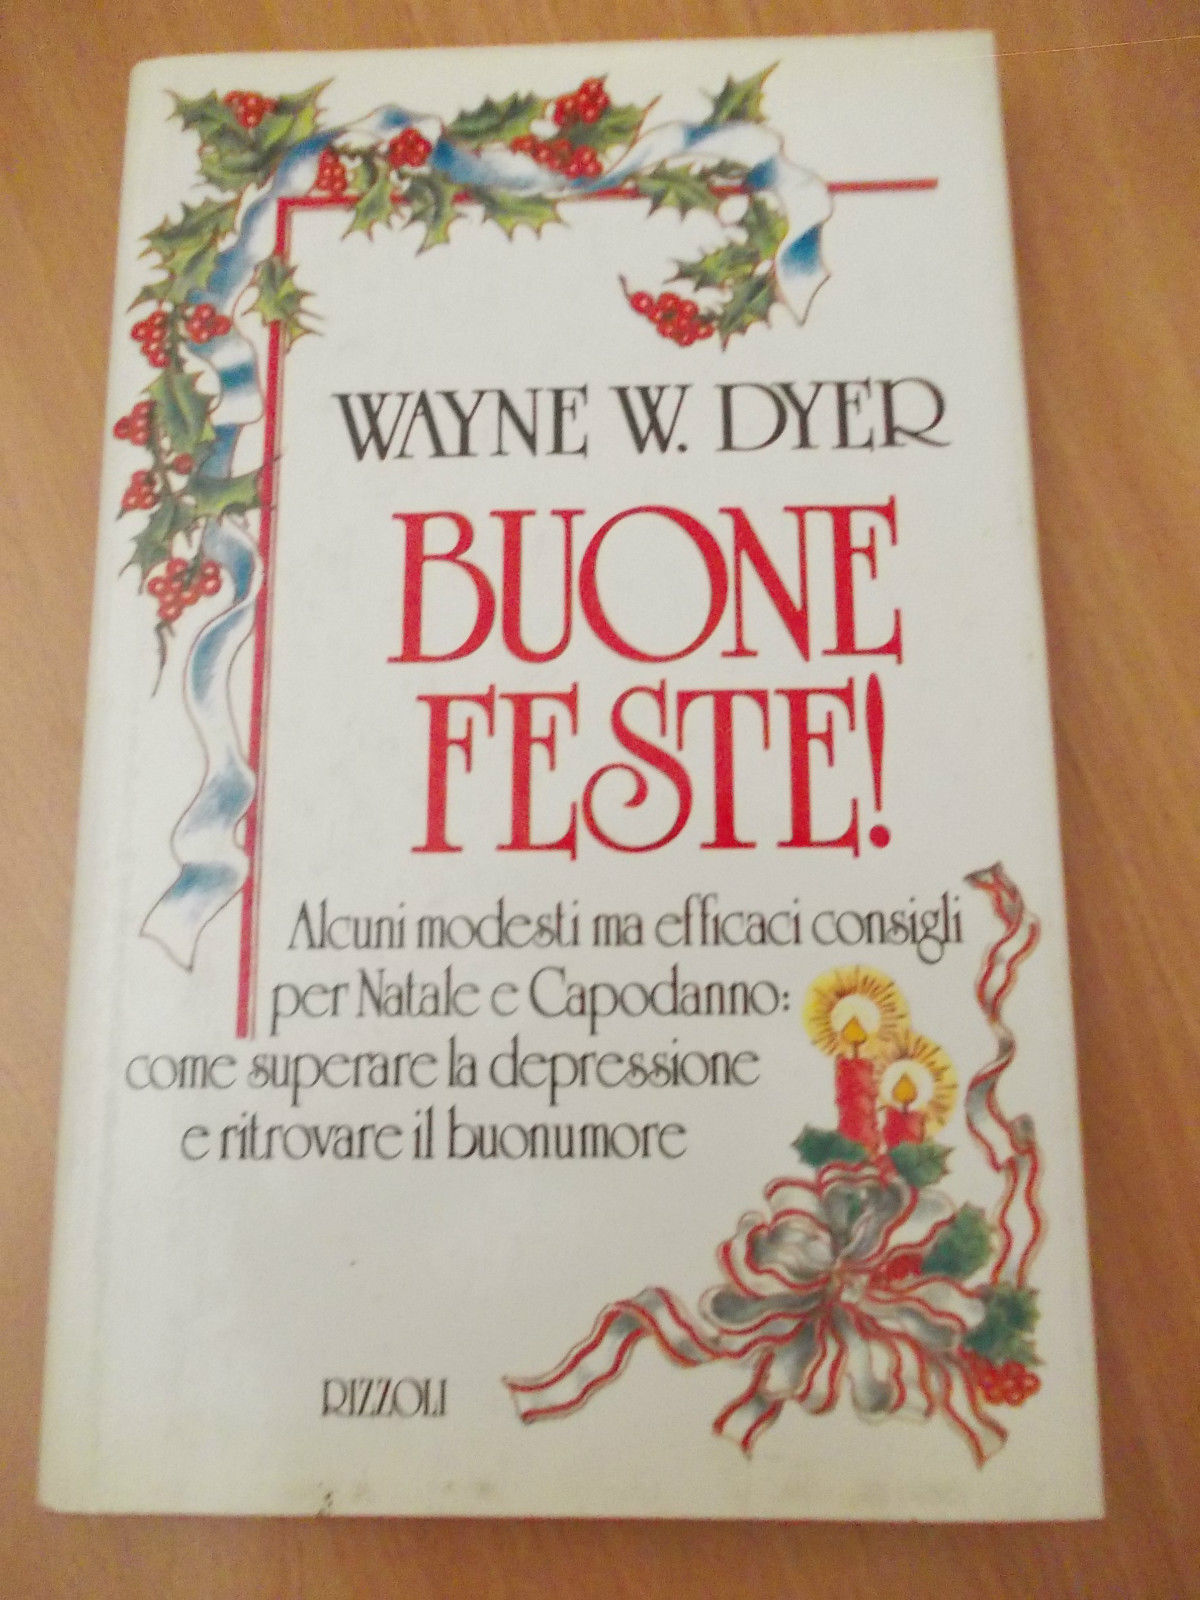 BUONE FESTE - Wayne W. Dyer - RIZZOLI - 1989 - M